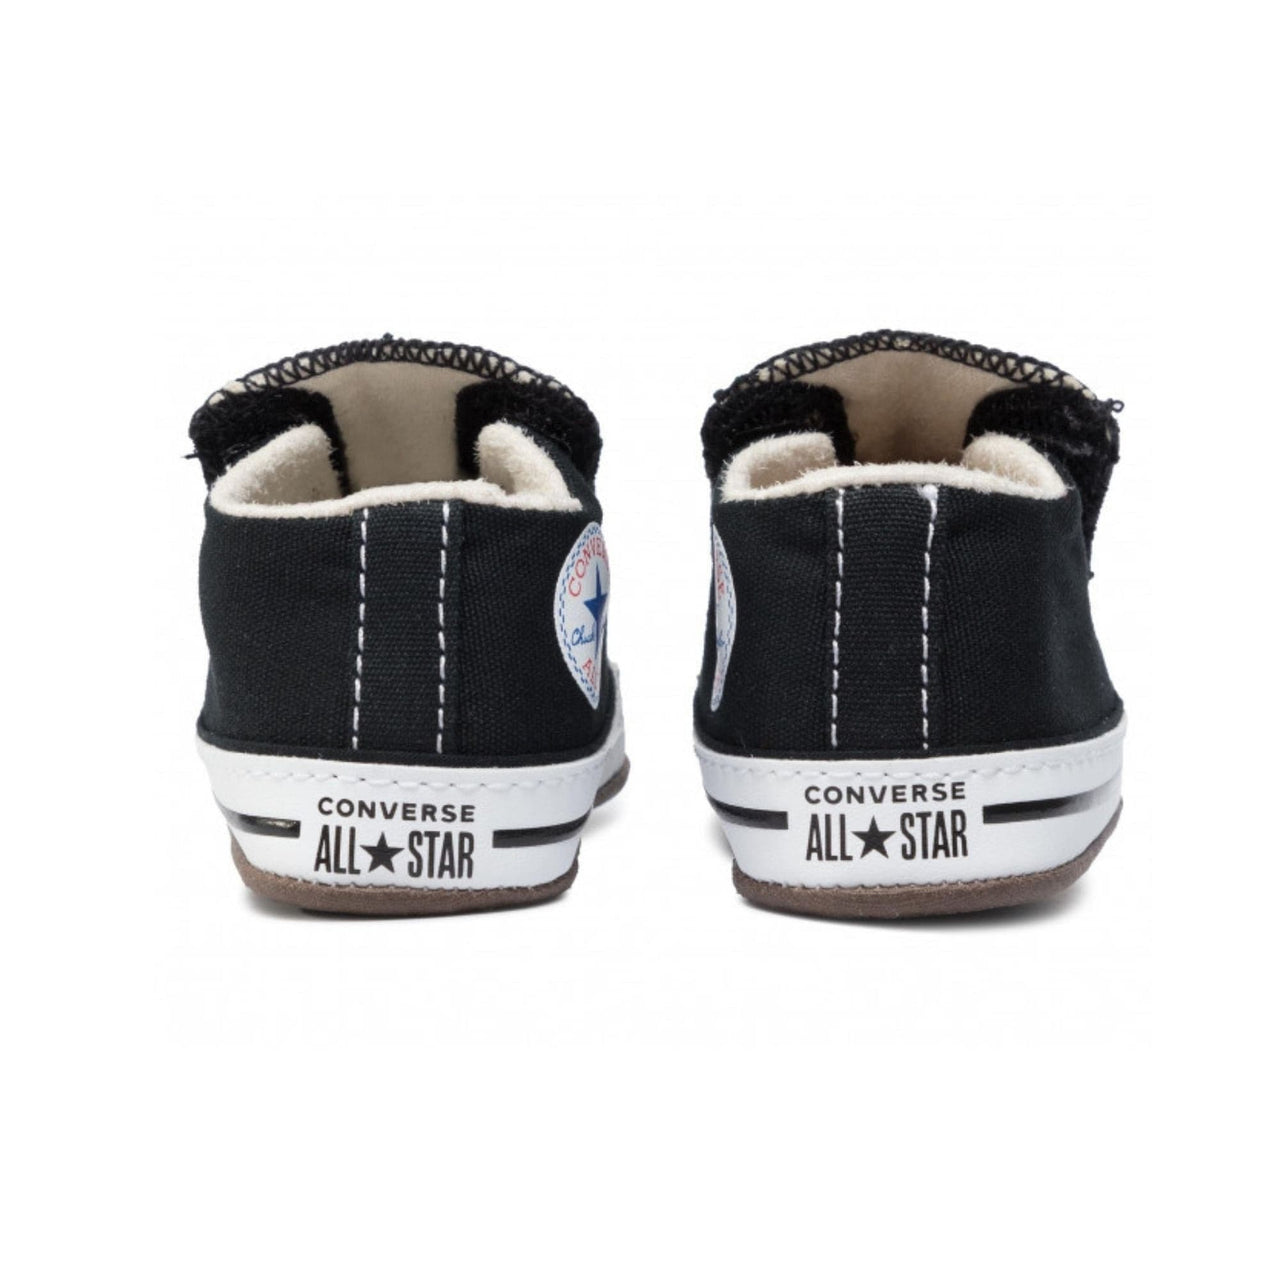 dejar En segundo lugar lucha Zapatillas Converse Bebe 865160C Chuck Taylor All Star Cribster | Comprar  Online en Much Sneakers®